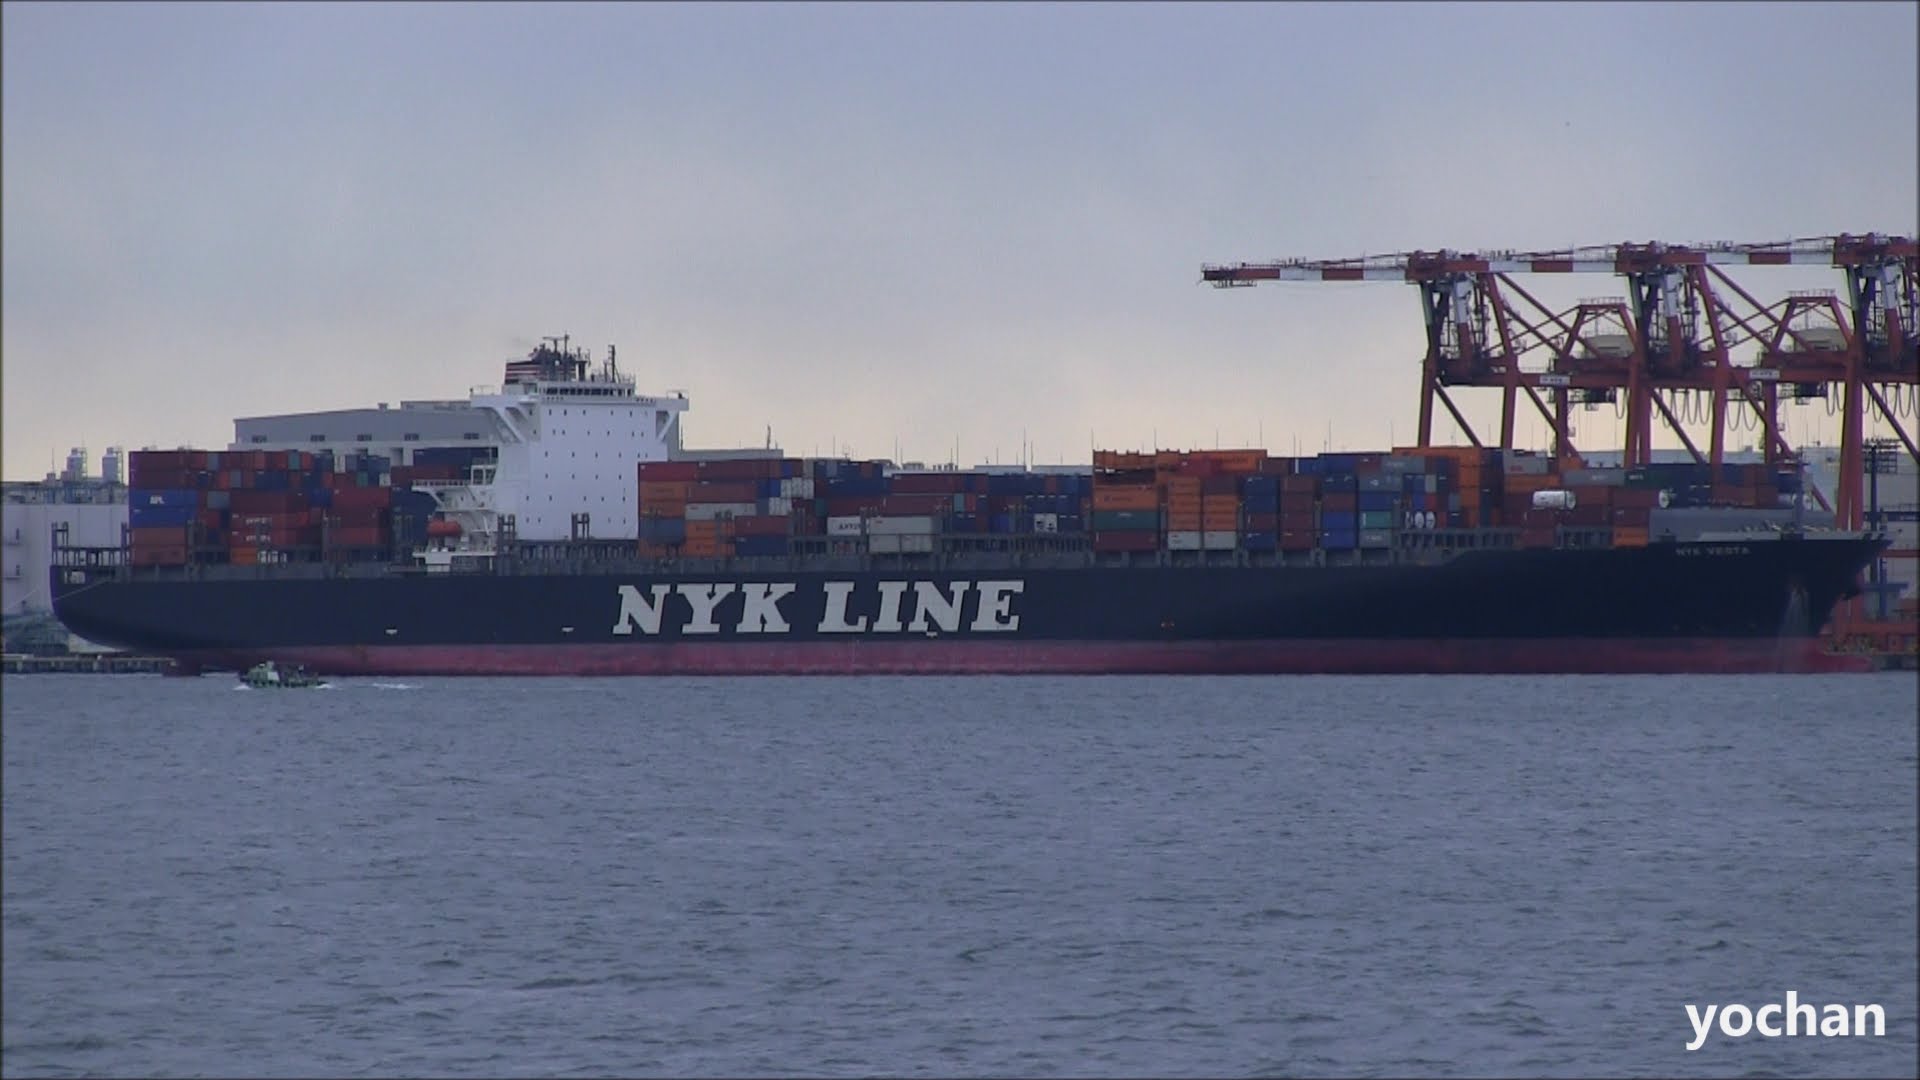 2019: Hãng tàu NYK thử nghiệm tàu container không người lái trên Thái Bình Dương